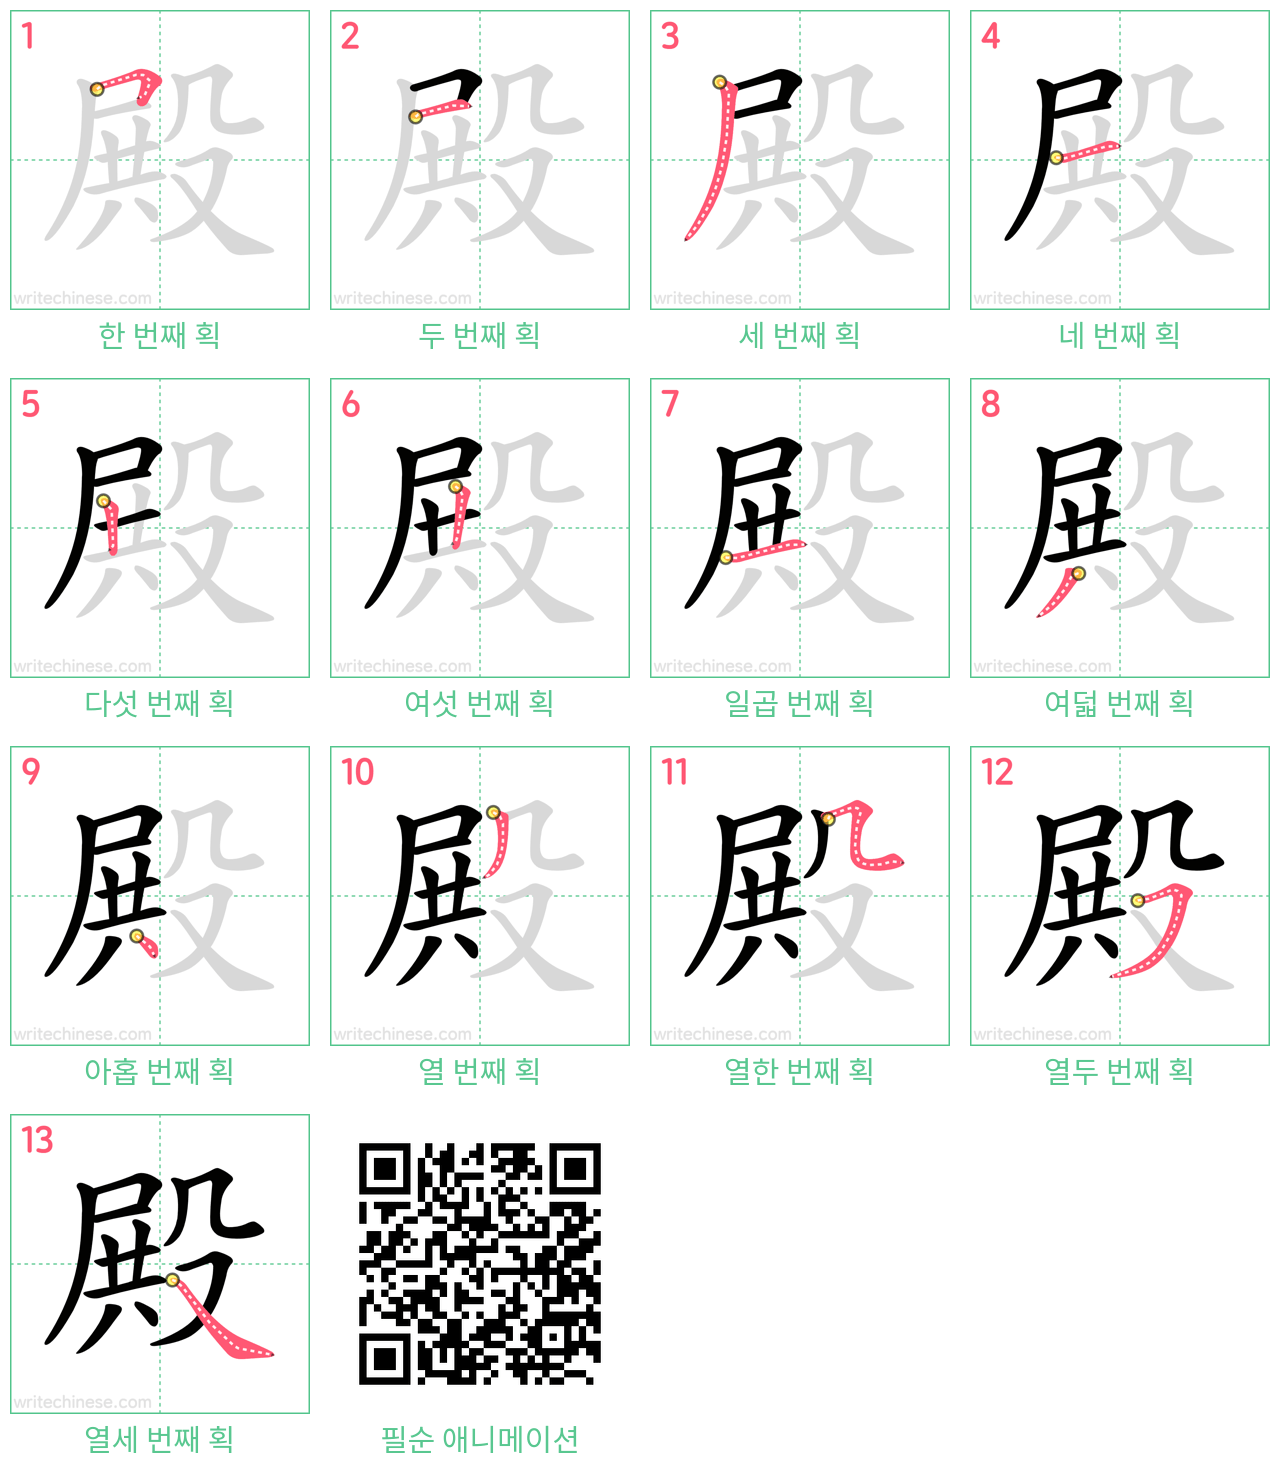 殿 step-by-step stroke order diagrams